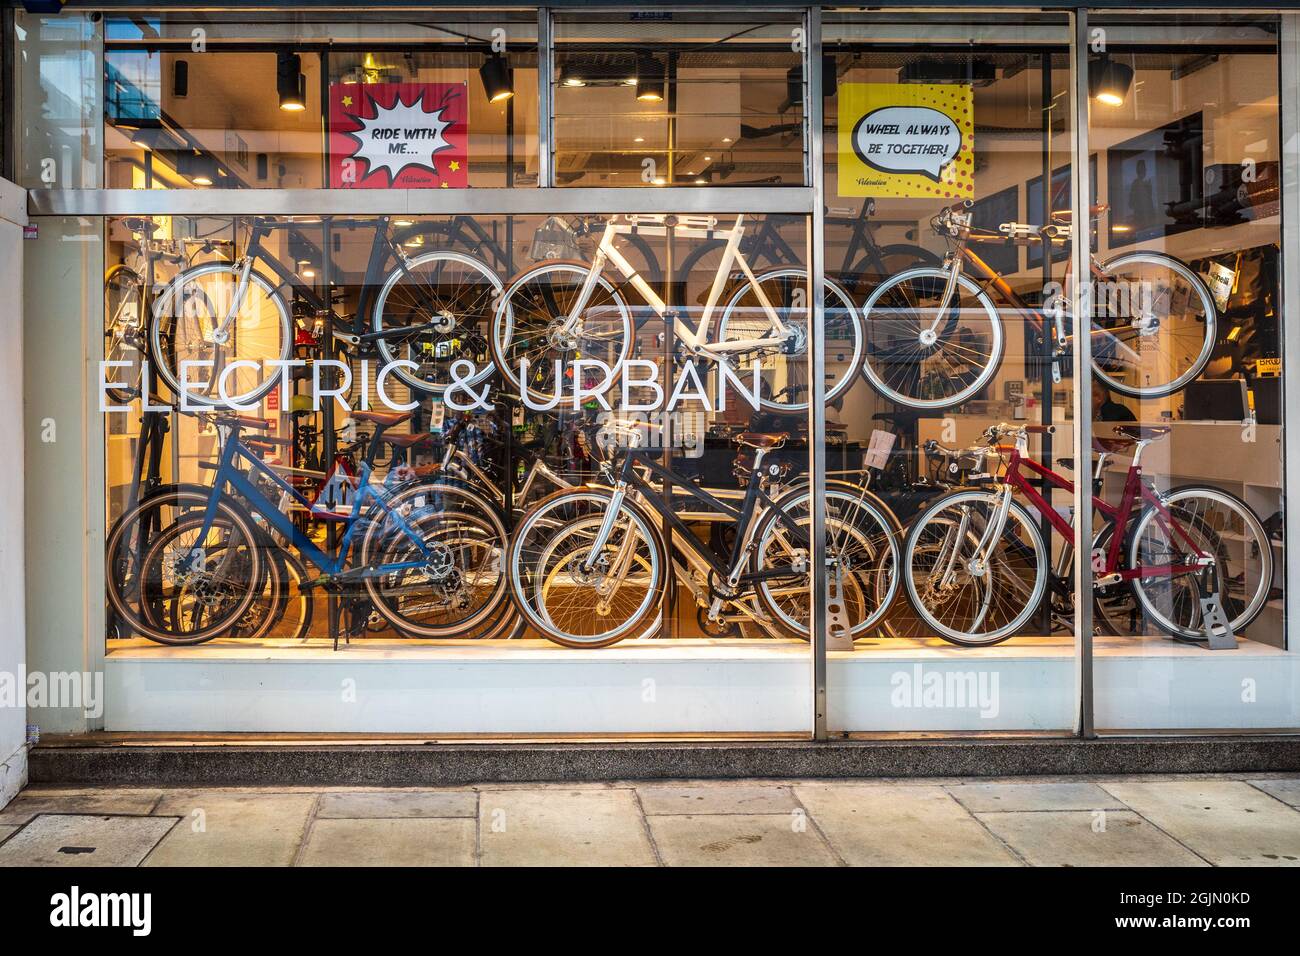 Velortion London Electric Bike Store.Electric and Urban Bike Shop - magasin  de vélo de la ville intérieure spécialisé dans les vélos électriques et  urbains.Boutique de vélos de Londres Photo Stock - Alamy